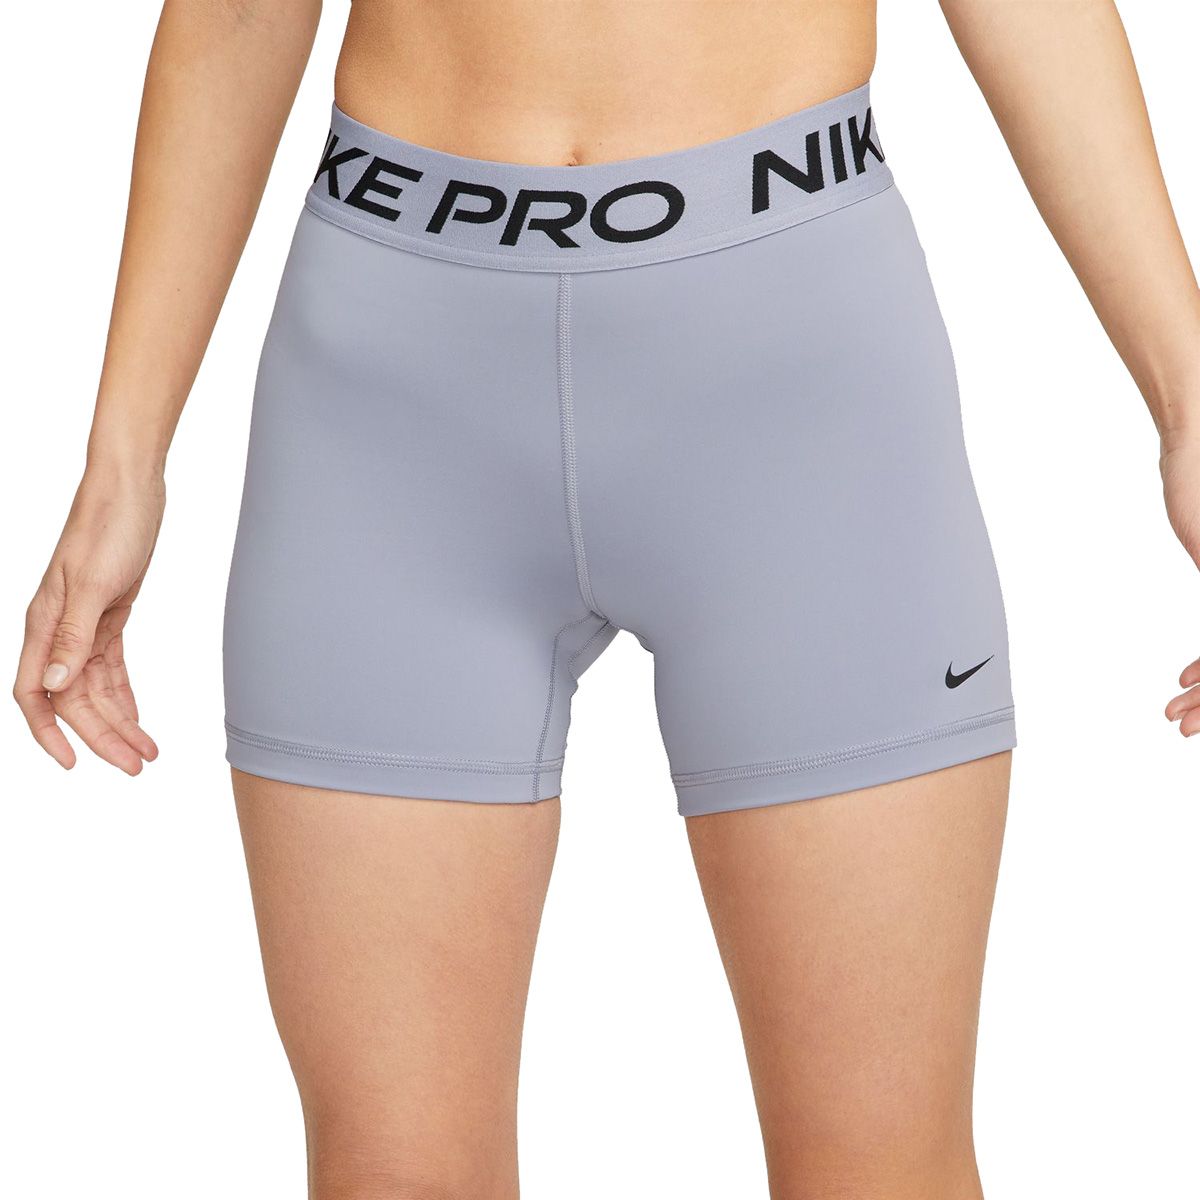 Шорт 365. Nike Pro shorts. Шорты компрессионные w NP 365 short 5in. Nike Pro шорты.